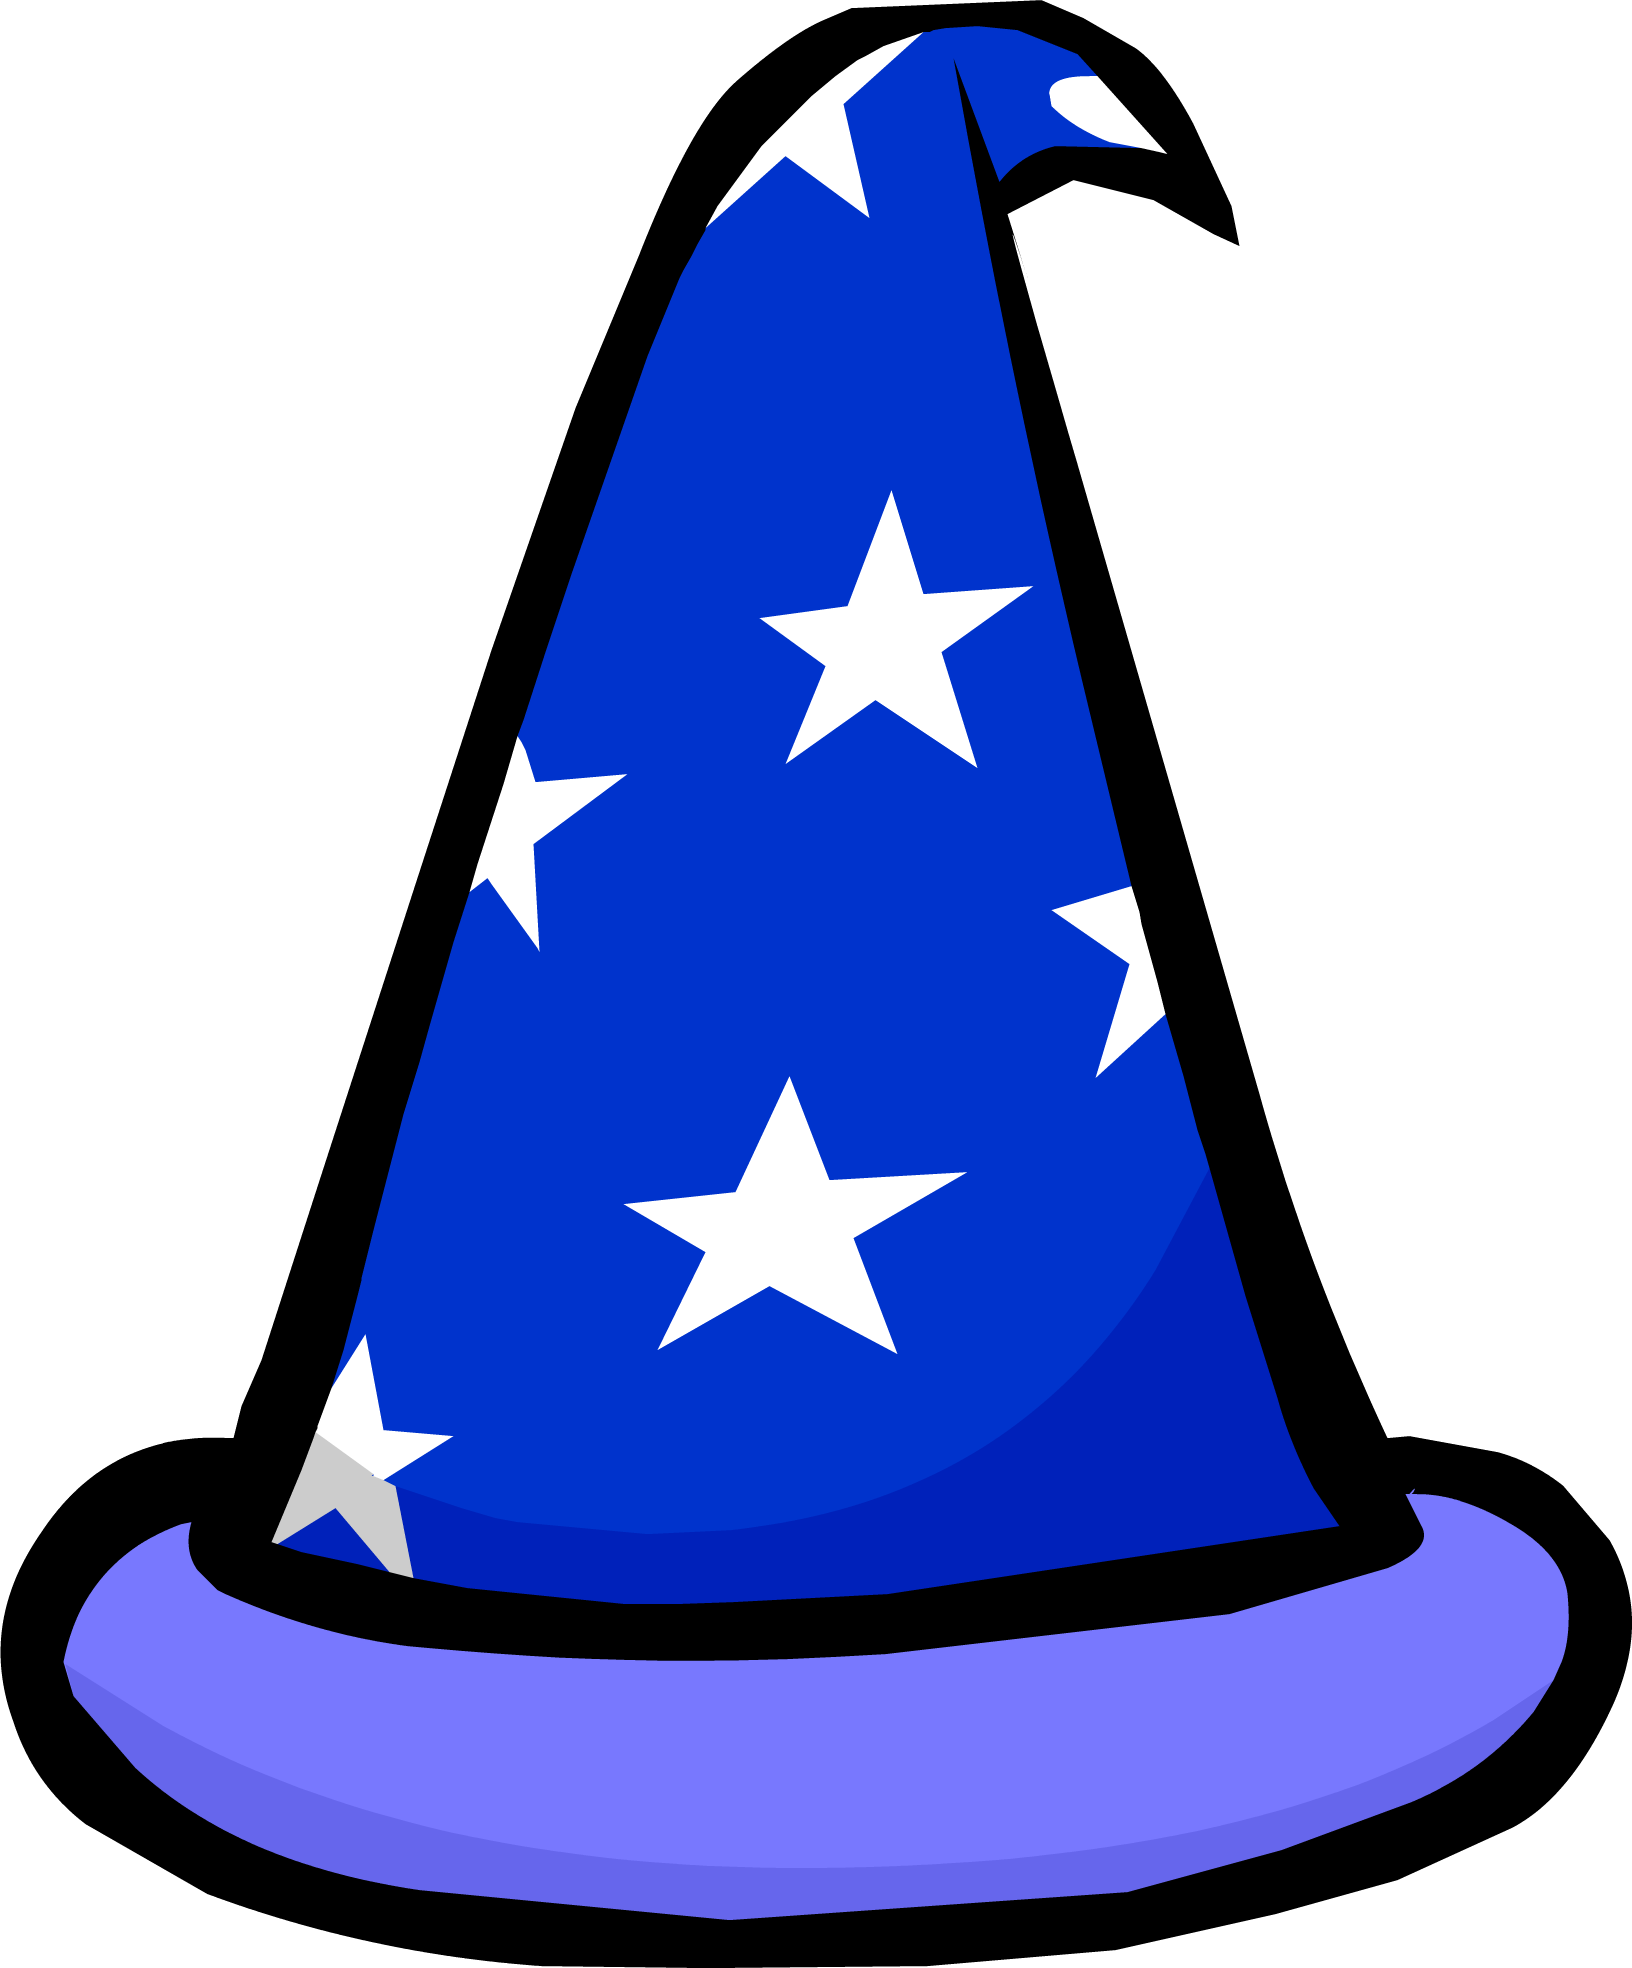 Wizard - Club Penguin Wizard Hat (1632x1968)